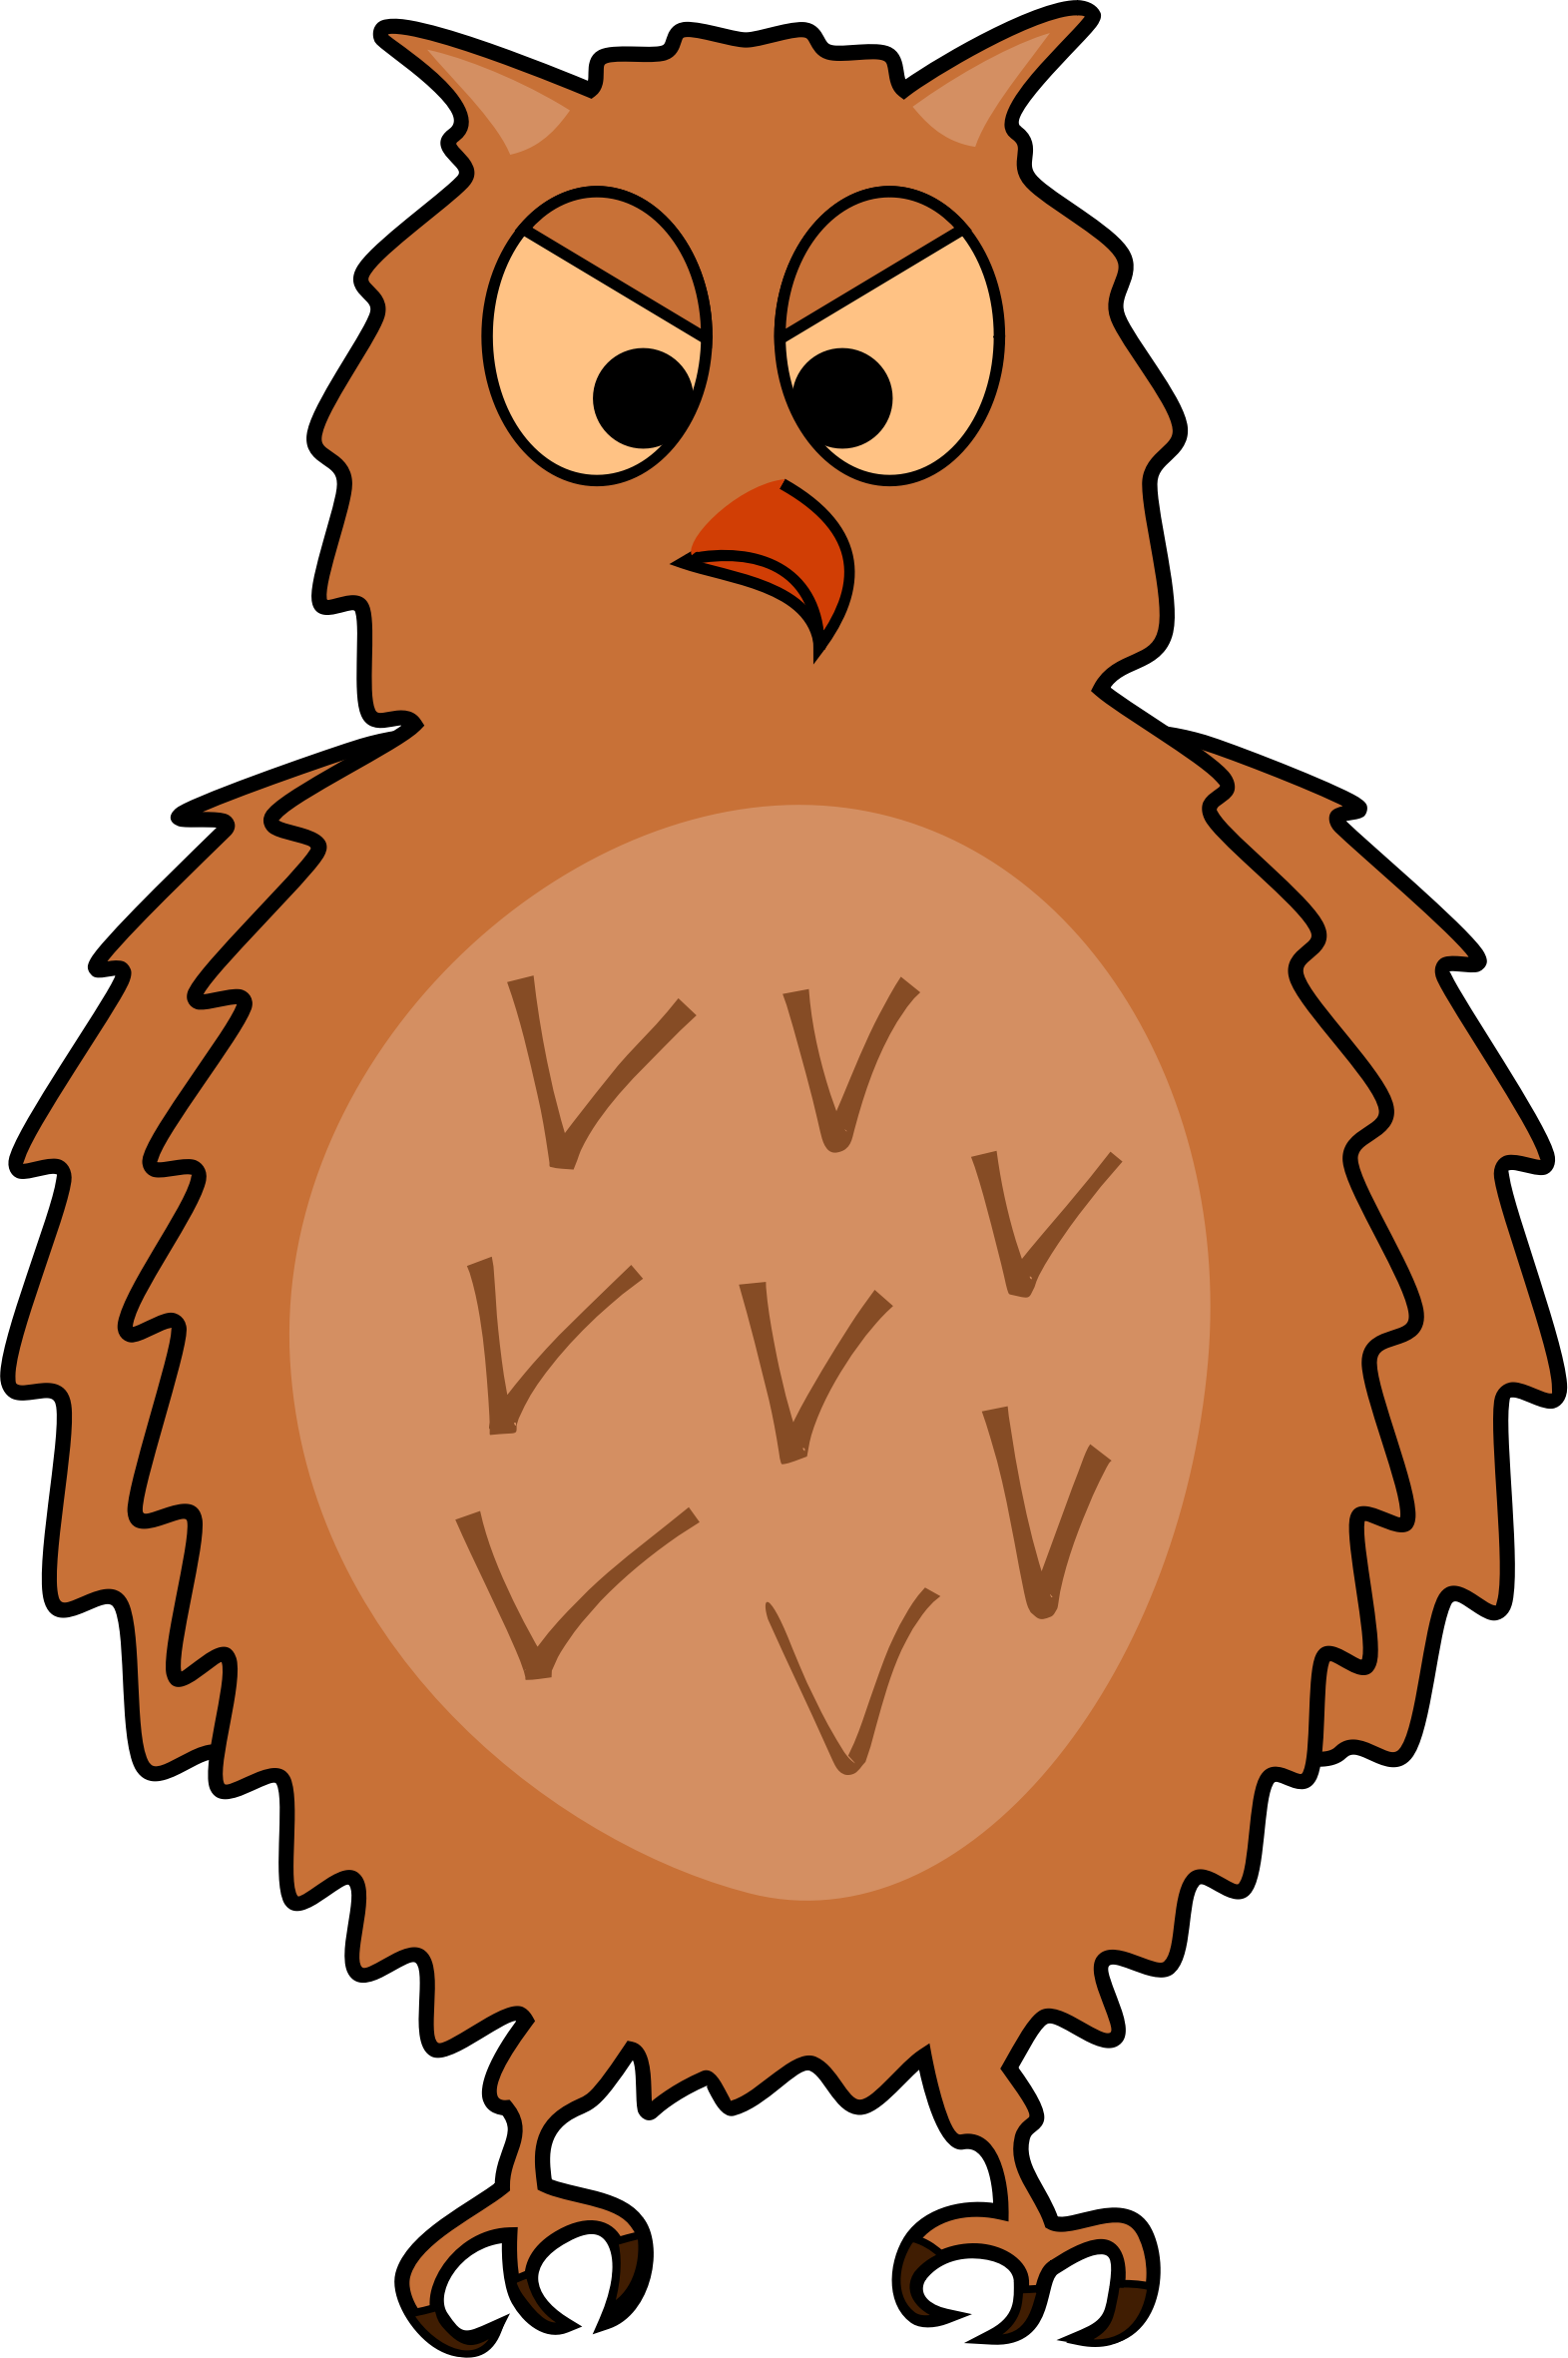 Big Image - Cartoon Mad Owl (1571x2362)